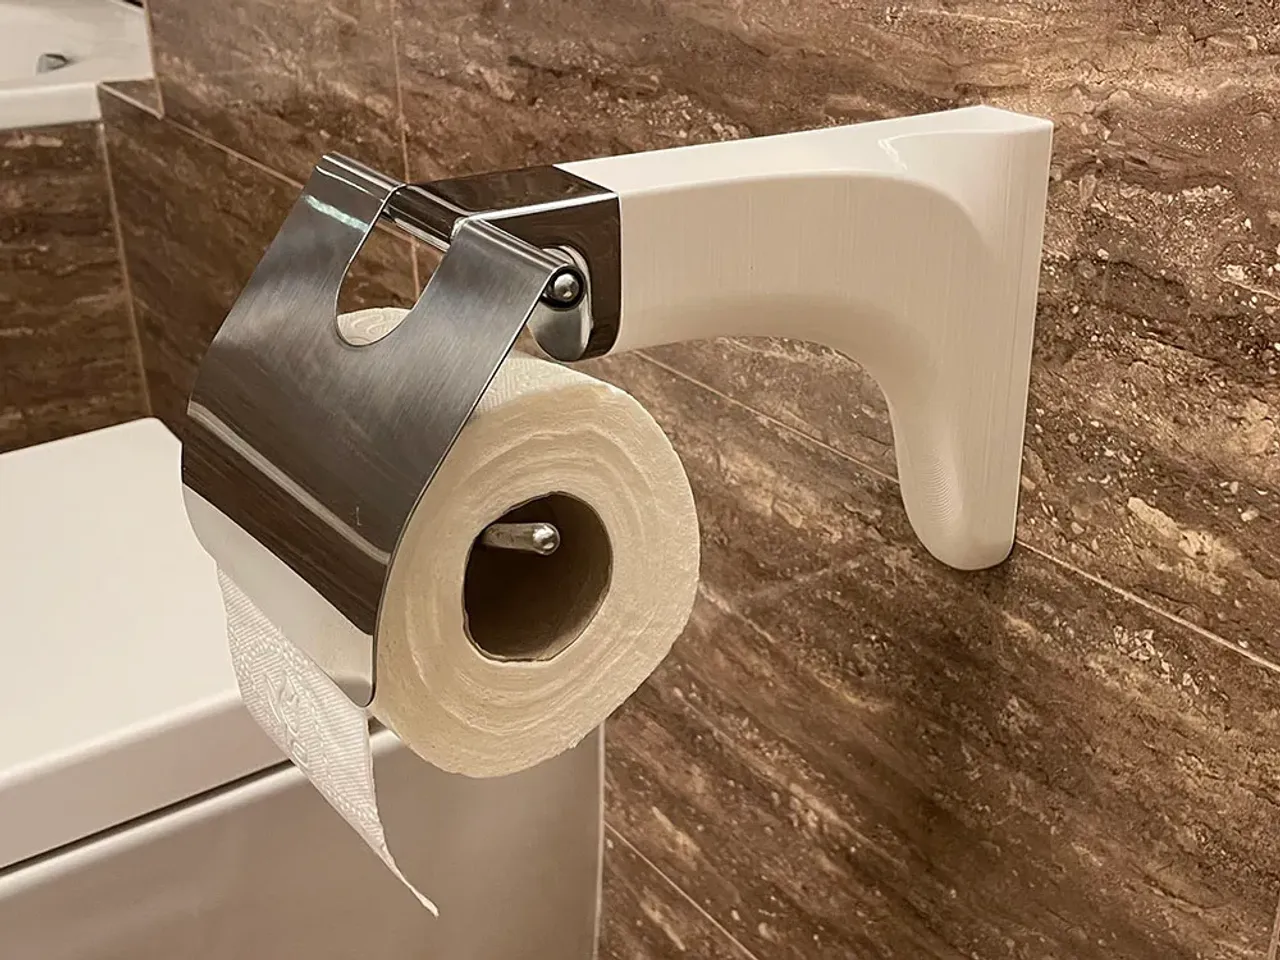 Extend-A-Roll Toilet Paper Holder - Extend-A-Roll